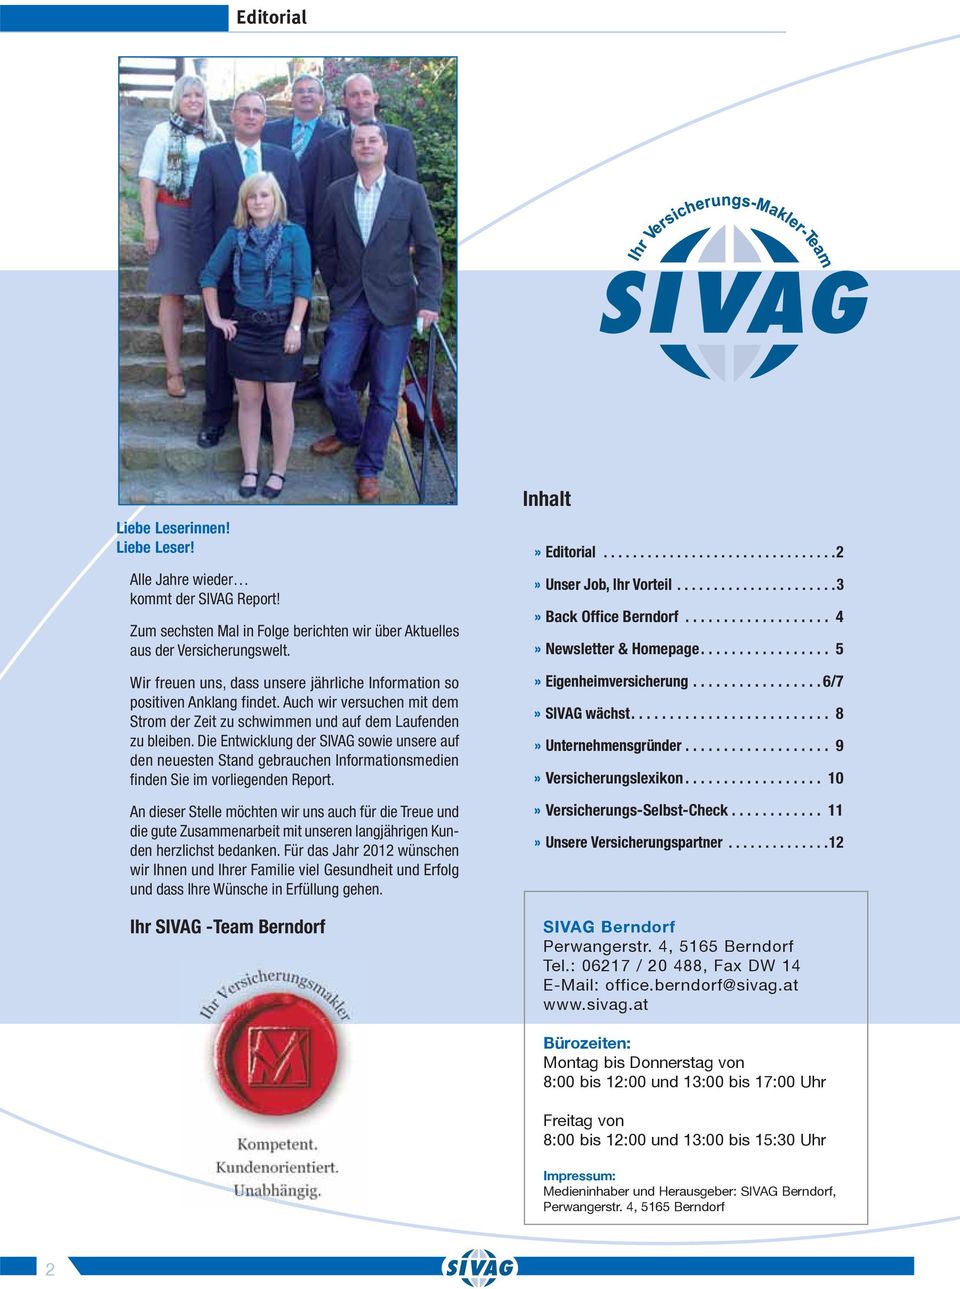 Die Entwicklung der SIVAG sowie unsere auf den neuesten Stand gebrauchen Informationsmedien finden Sie im vorliegenden Report.